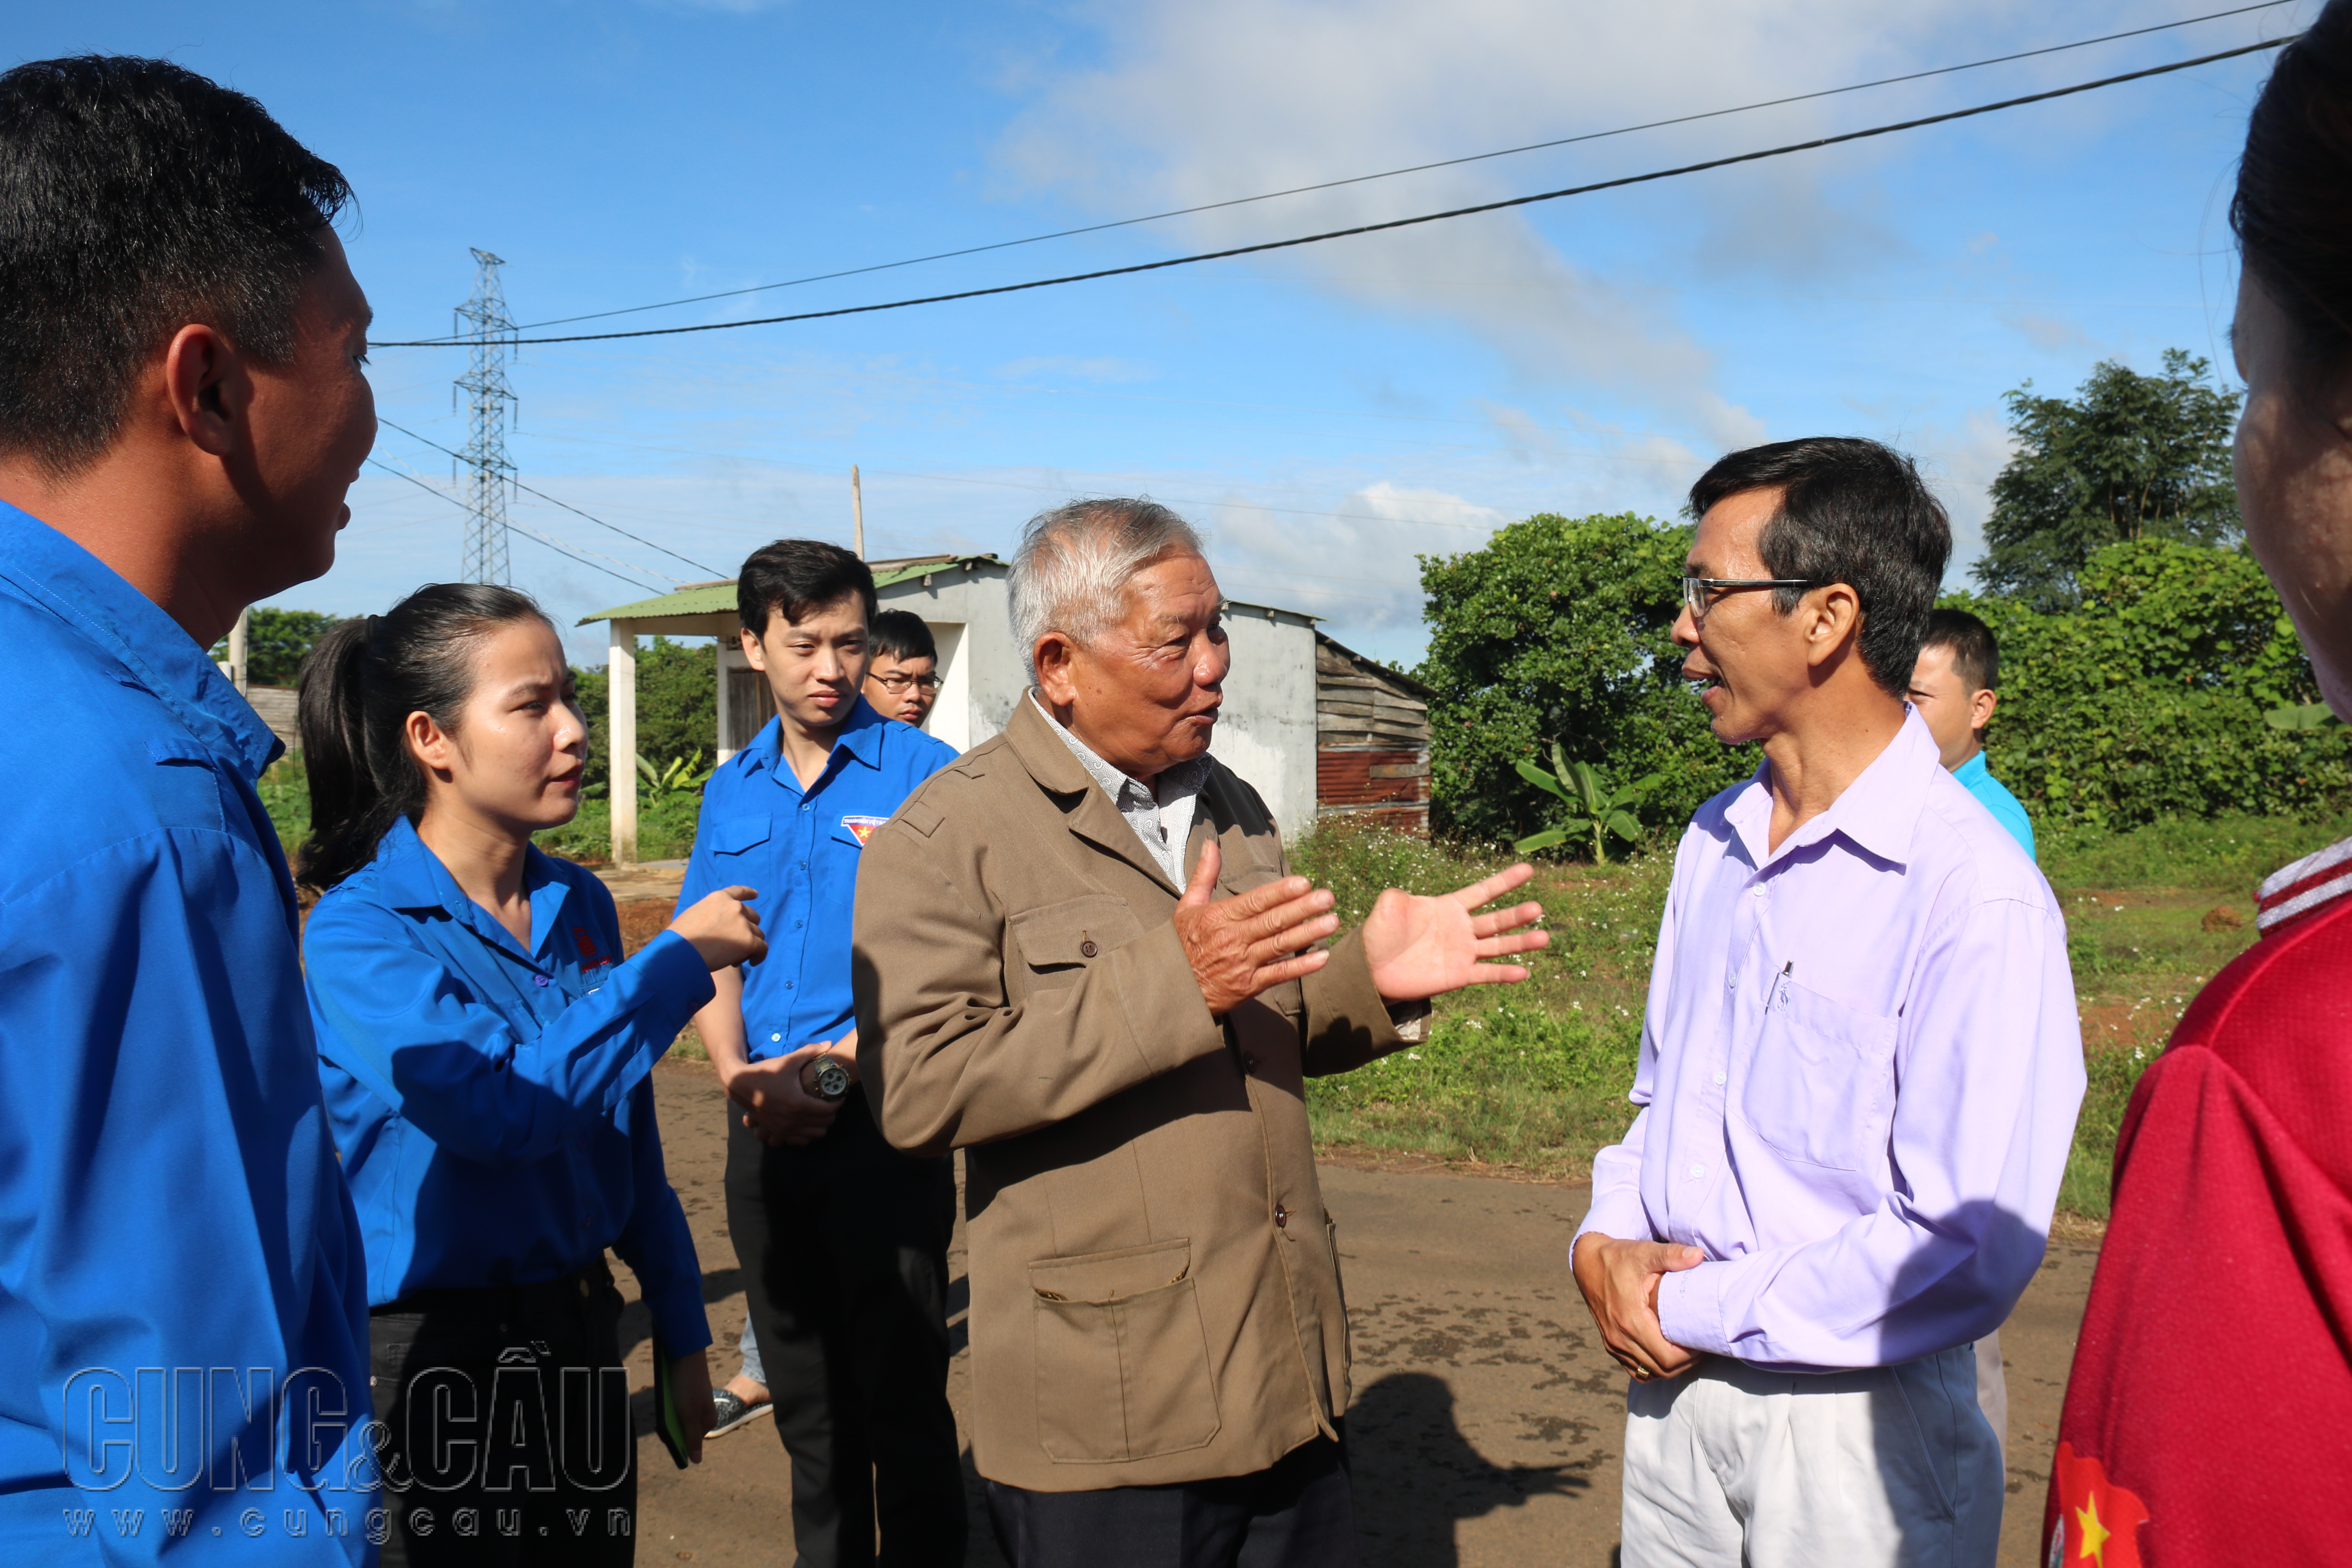 Các bạn Đoàn viên thăm hỏi và tìm hiểu về Khu di tích lịch sử thôn Cây Xoài thị xã Gia Nghĩa, tỉnh Đắk Nông.